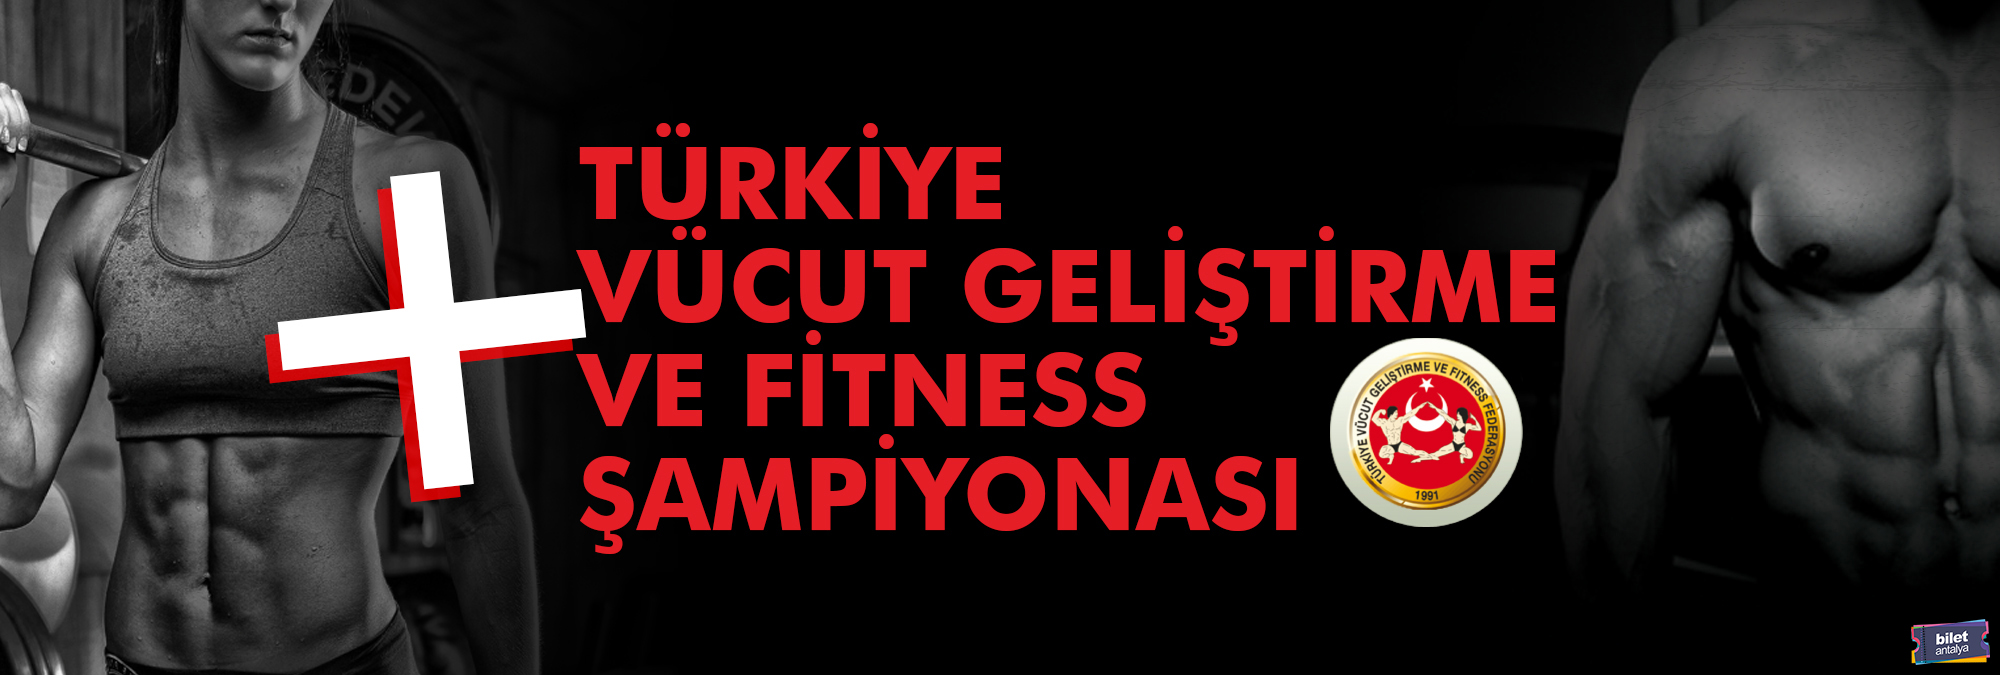 22-26-mart-2019-turkiye-vucut-gelistirme-ve-fitness-sampiyonasi-avrupa-sampiyonasi-milli-takim-secmeleri